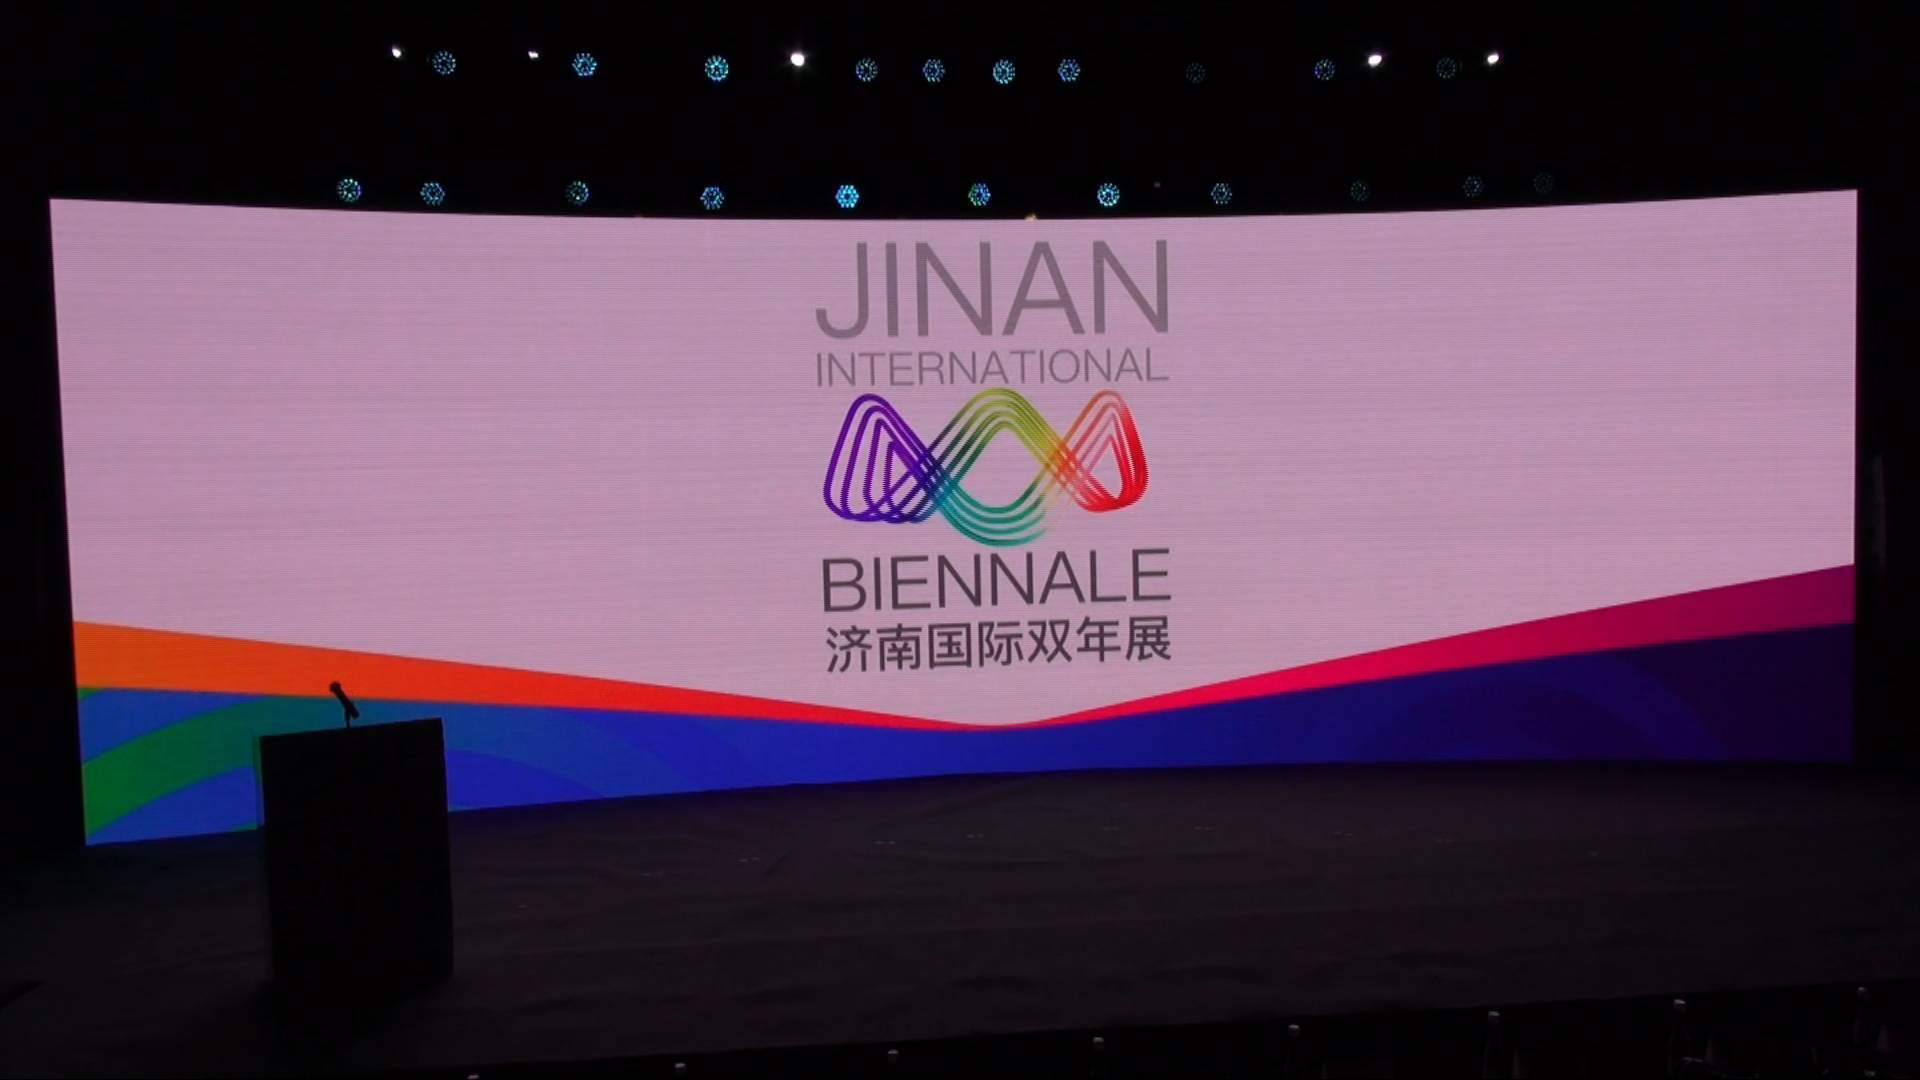 64秒丨让济南成为Jinan！艺术盛会燃情泉城，首届济南国际双年展启动